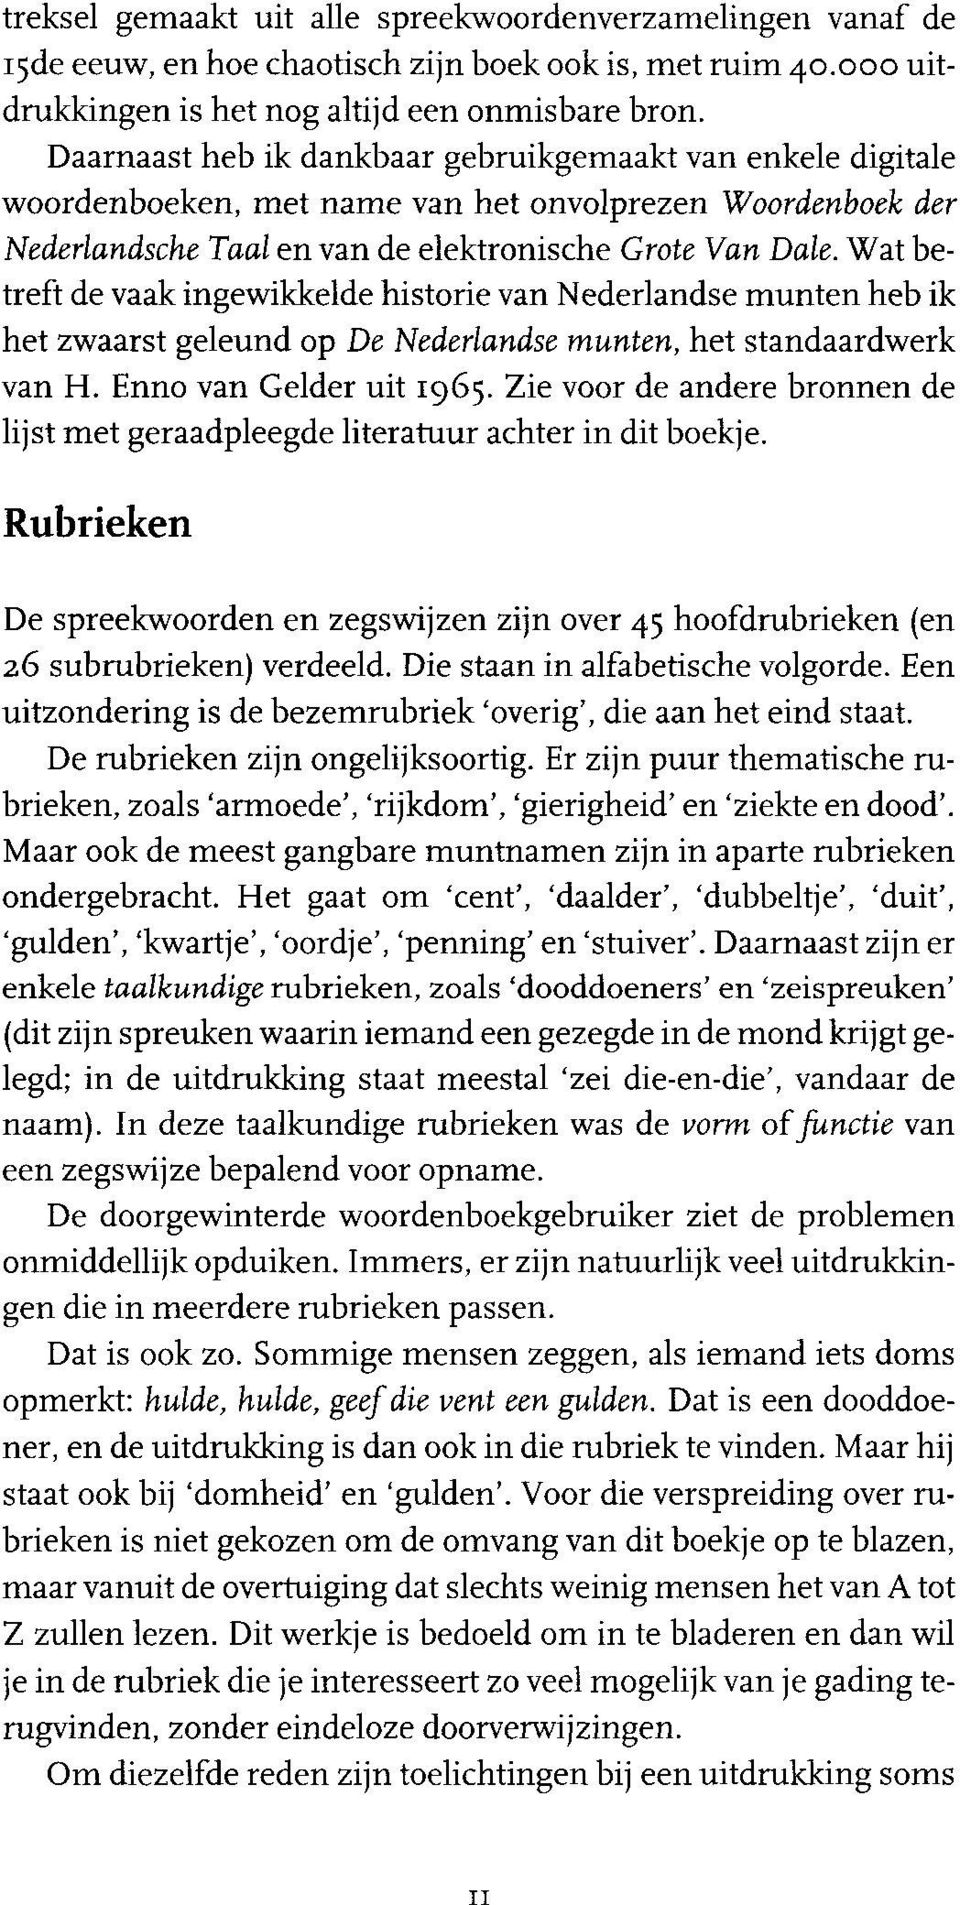 Wat betreft de vaak ingewikkelde historie van Nederlandse munten heb ik het zwaarst geleund op De Nederlandse munten, het standaardwerk van H. Enno van Gelder uit 1965.